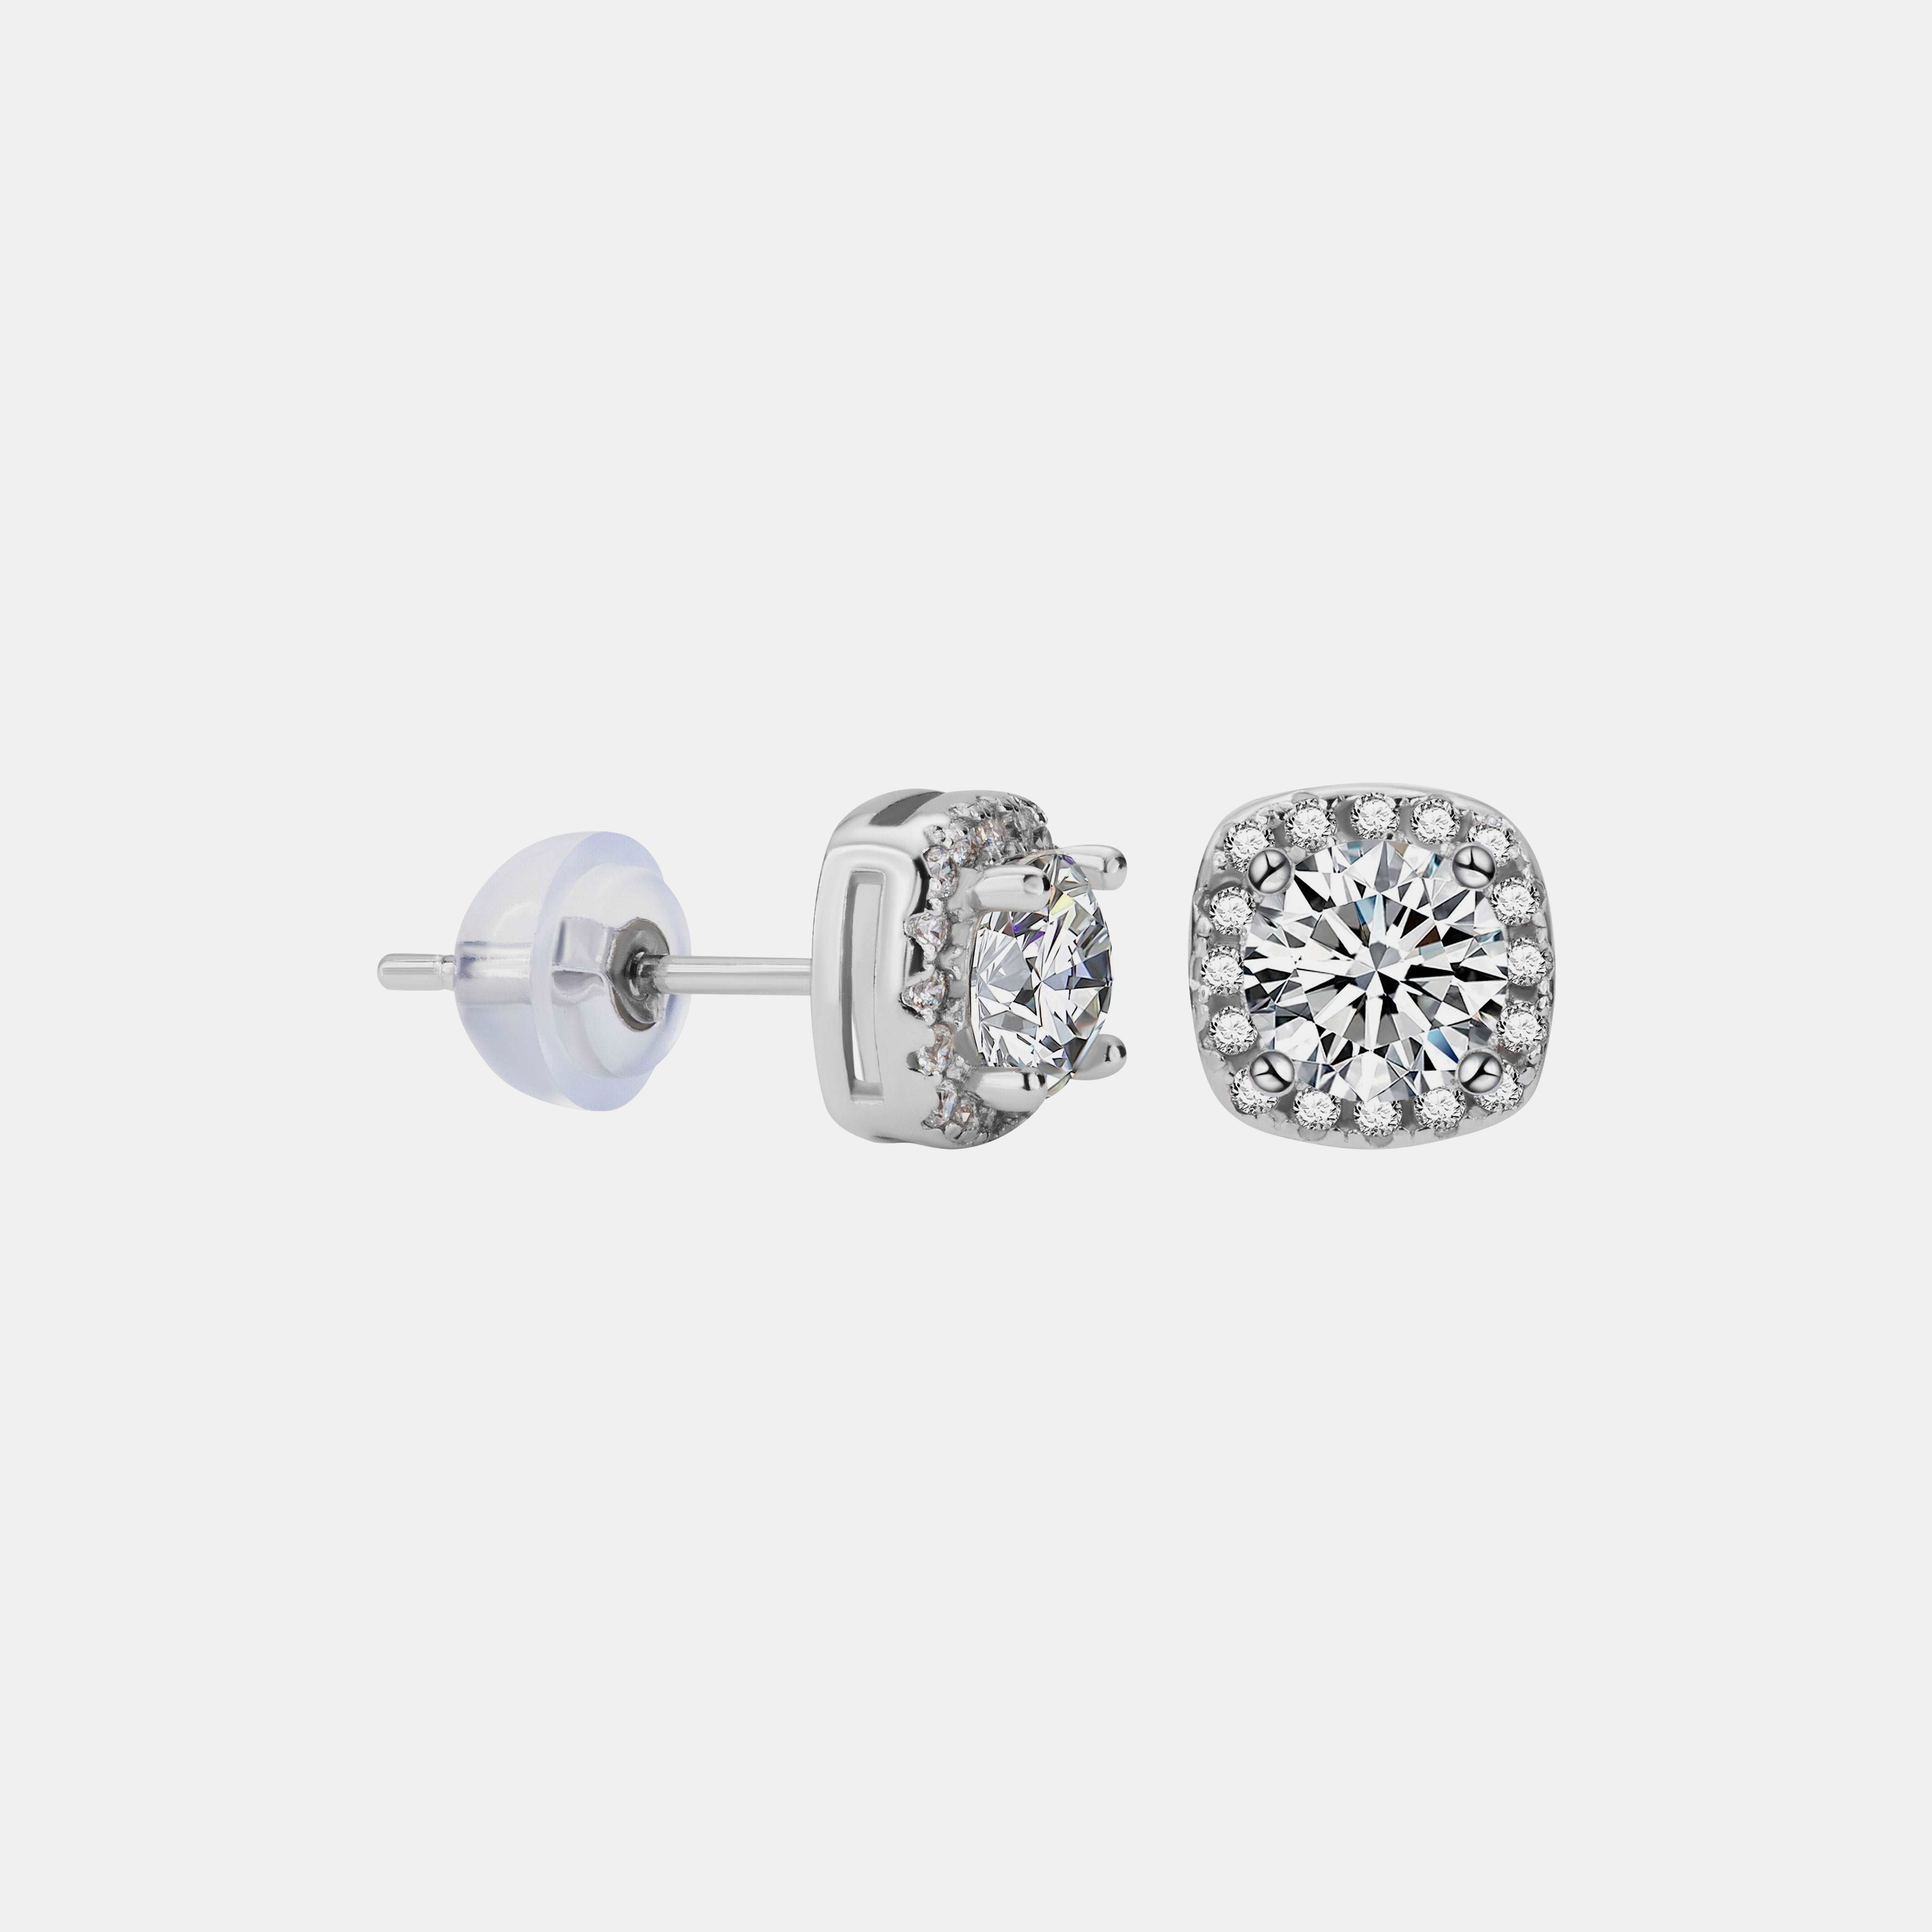 【#24】925 Sterling Silver Moissanite Earrings